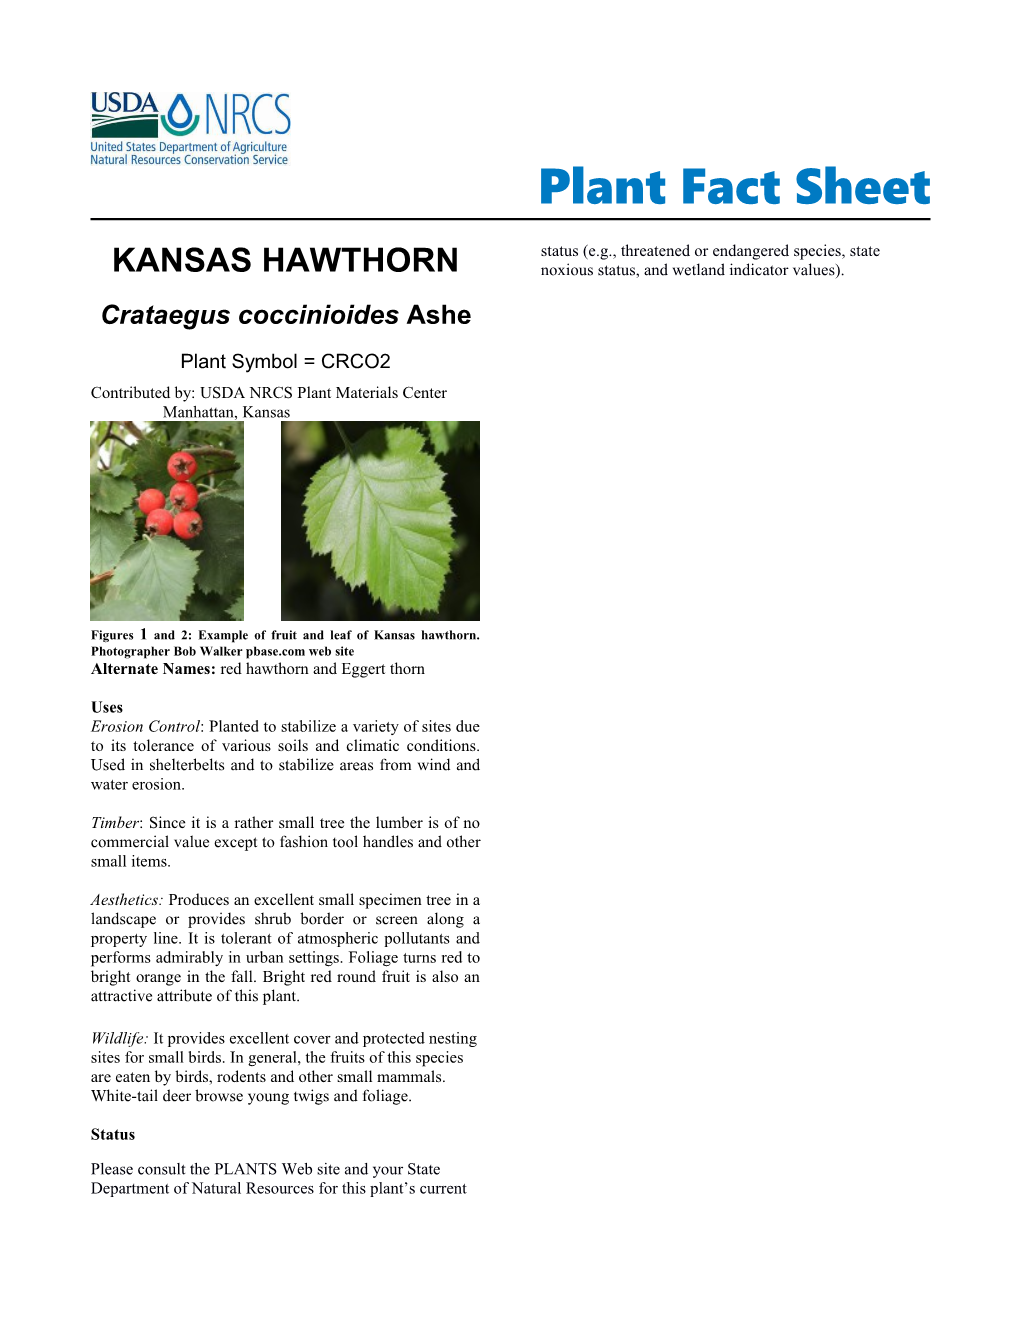 Kansas Hawthorn, Crataegus Coccinioides,Plant Fact Sheet